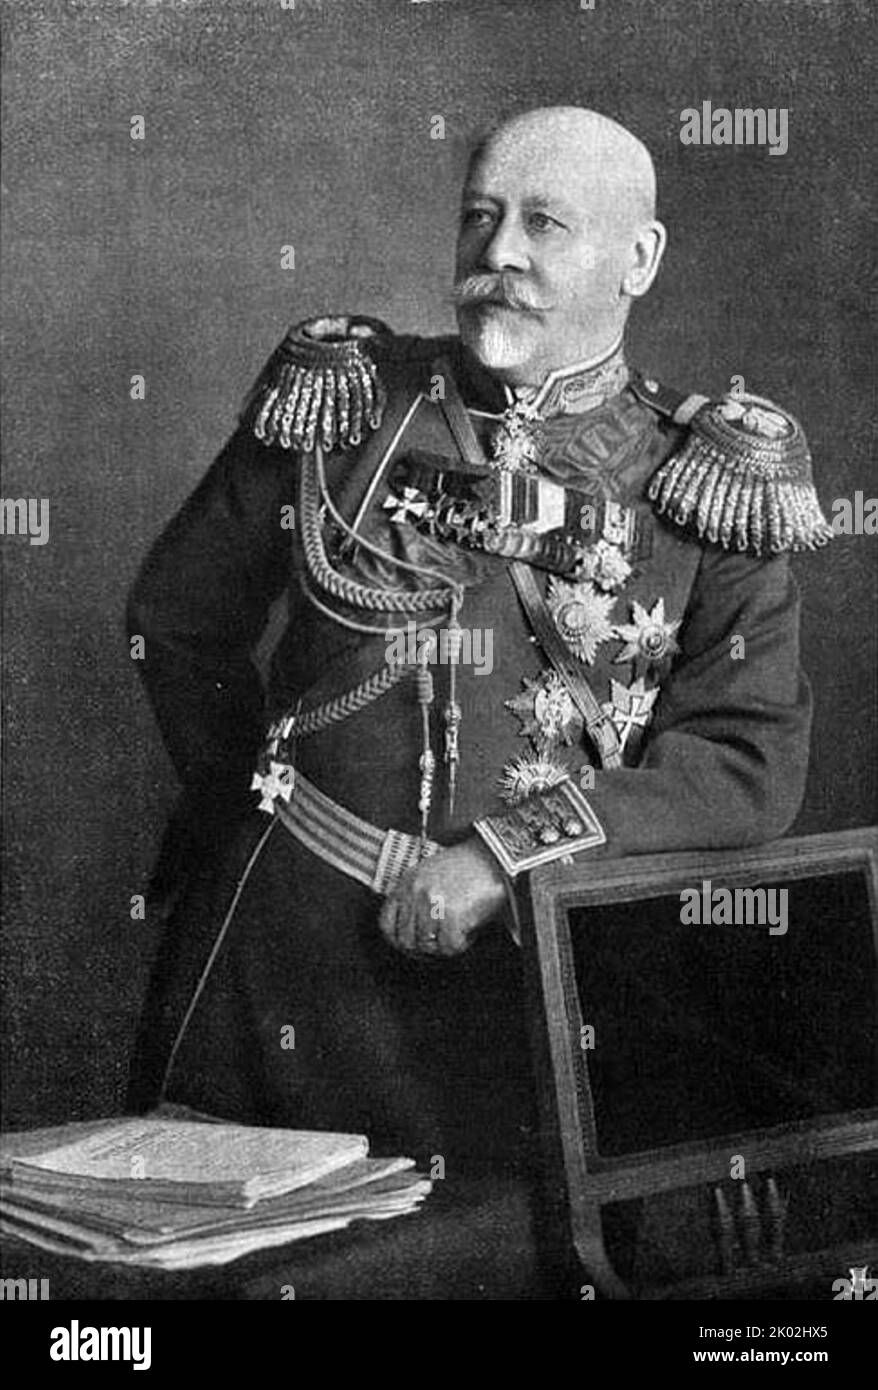 Wladimir Alexandrowitsch Suchomlinow (1848 - 1926) der russische General der kaiserlichen russischen Armee, der von 1908 bis 1909 als Generalstabschef und von 1909 bis 1915 als Kriegsminister fungierte. Suchomlinow wurde wegen Hochverrats, Korruption und Machtmissbrauch angeklagt Stockfoto